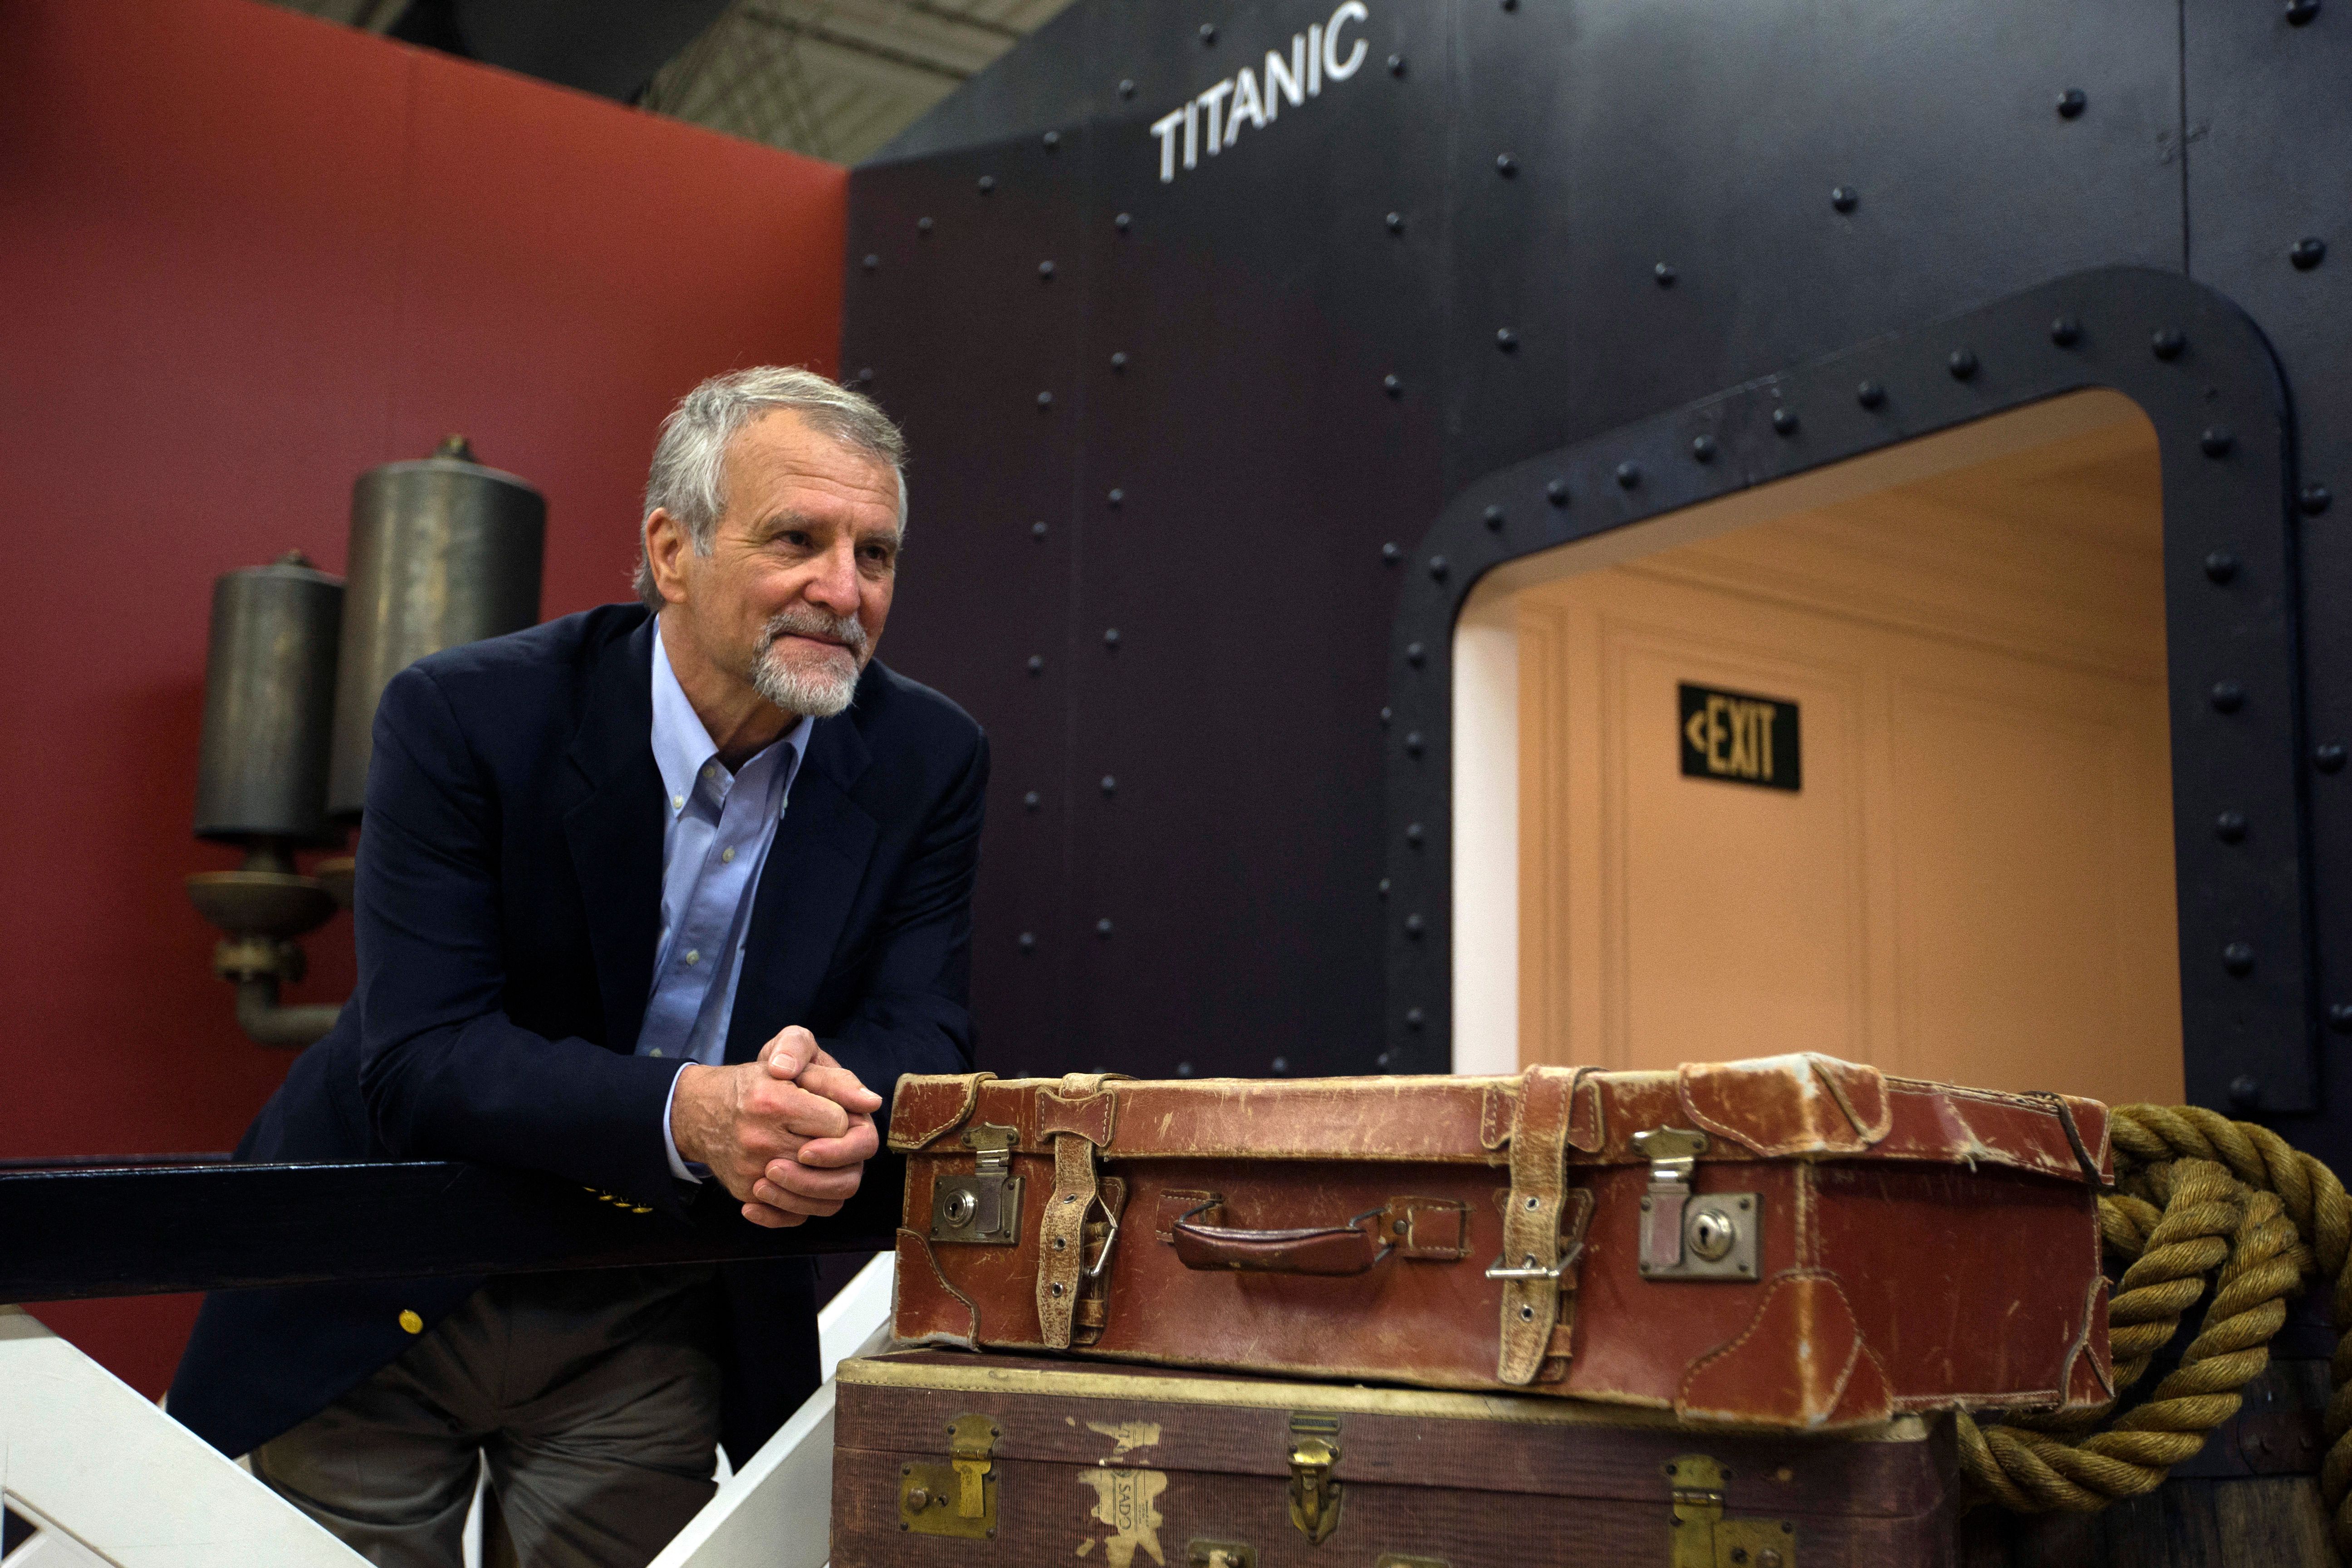 Paul-Henri Nargeolet pose à l'exposition Titanic à Paris en 2013 | Source : Getty Images